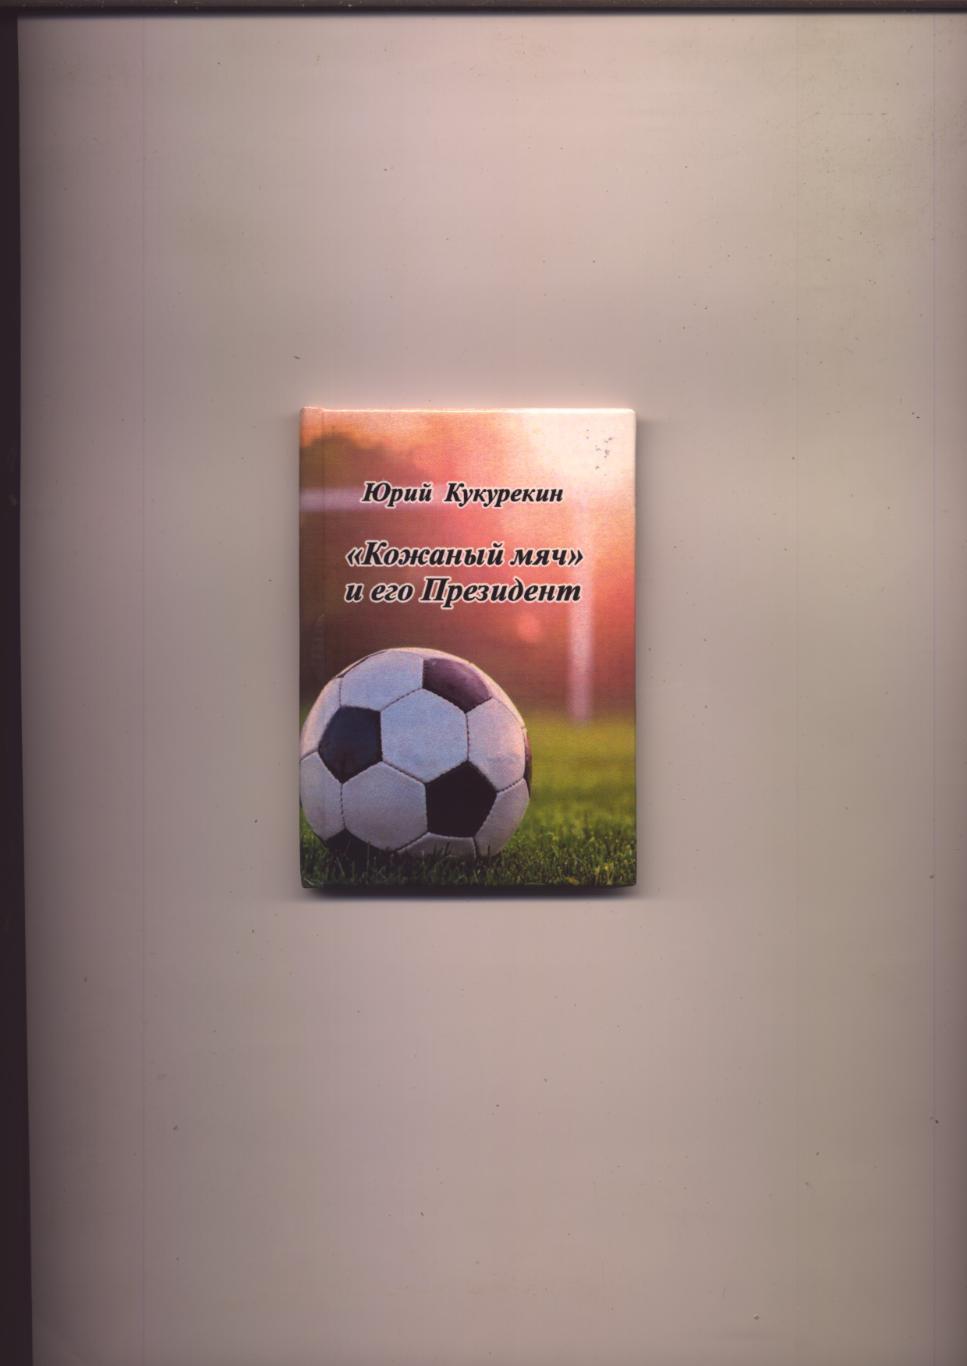 Редкая мини-книга Футбол Кожаный мяч и его Президент 2020 г Луганск тираж 50 экз